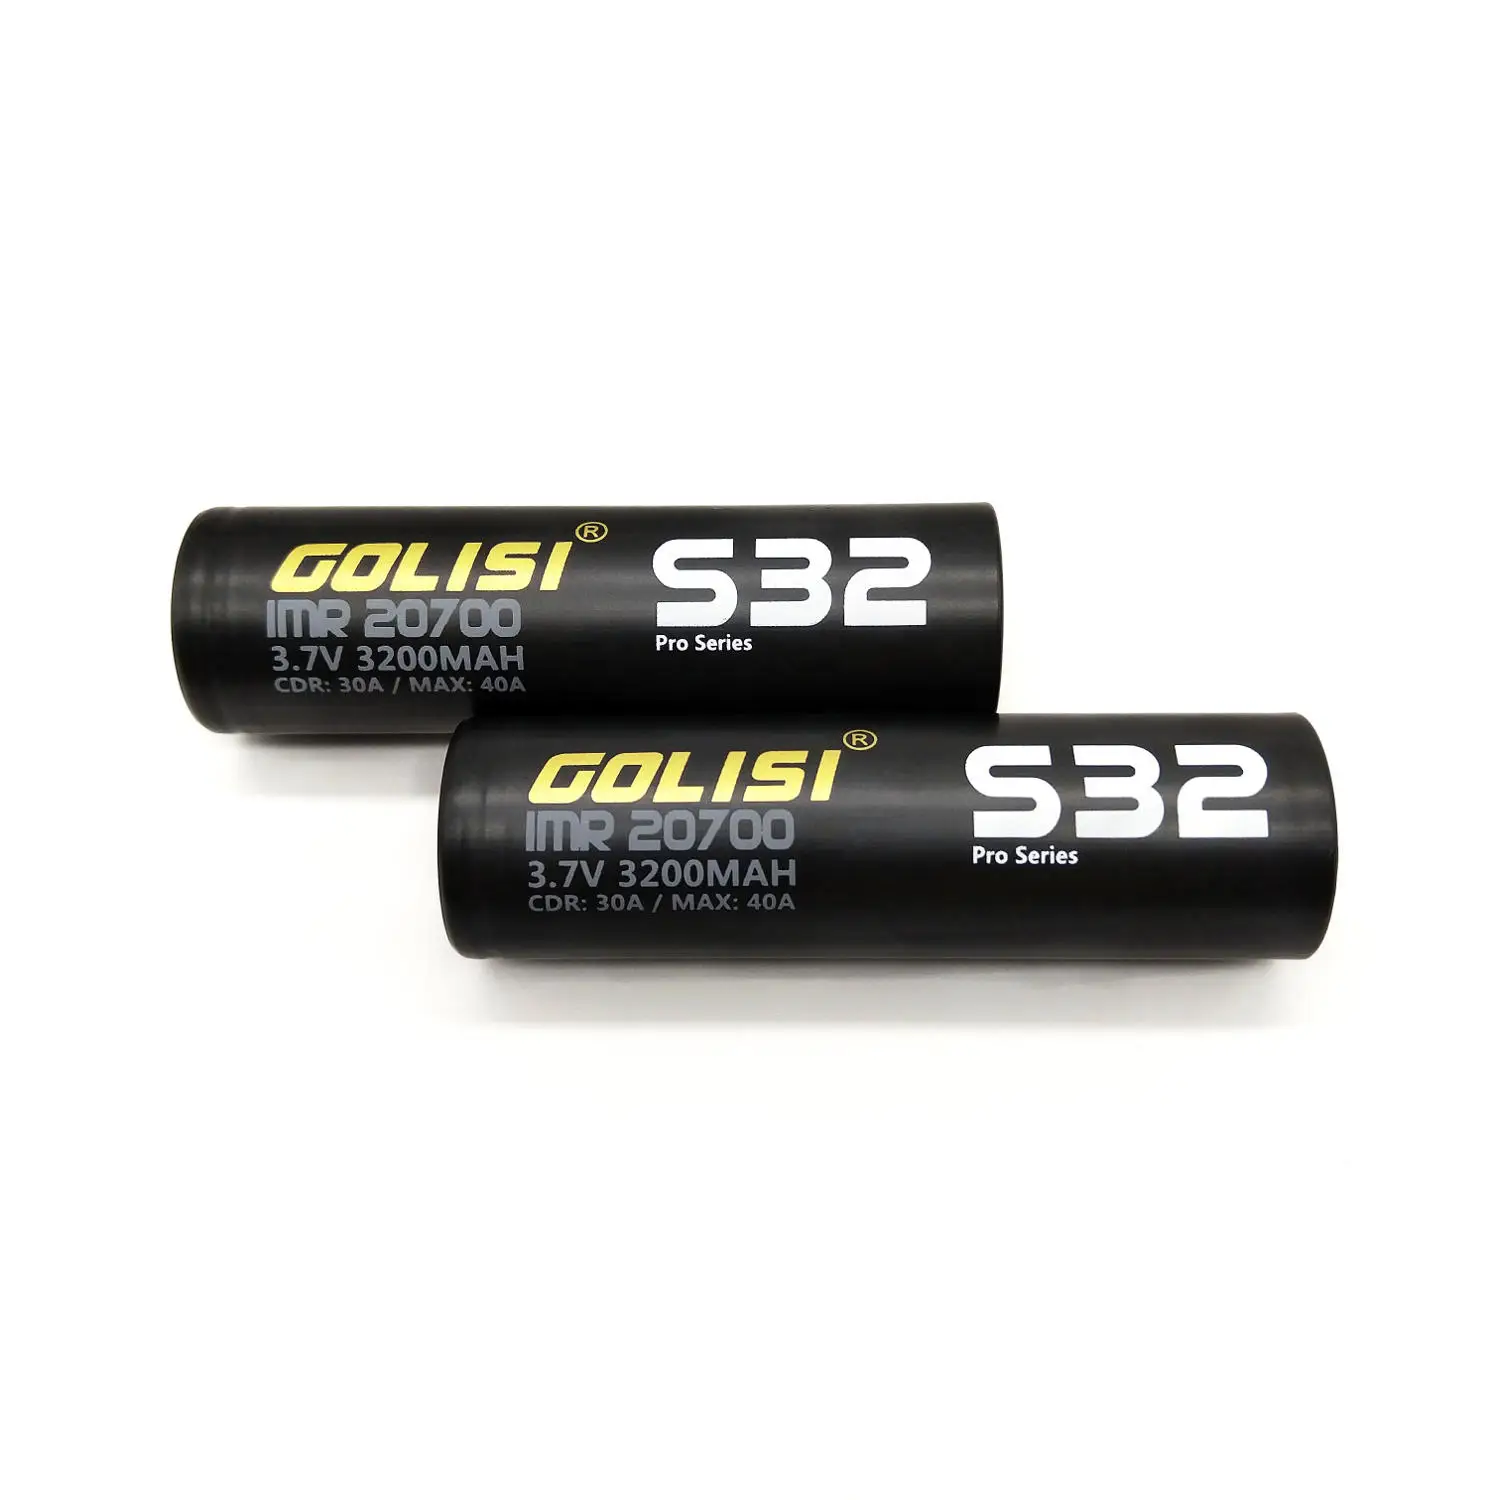 Golisi 2 шт. S32 Imr 20700 3200 Mah 3,7 V Cdr 30A Max 40A Высокая утечка электронная сигарета аккумуляторная батарея для Vape вспышка светильник головной светильник